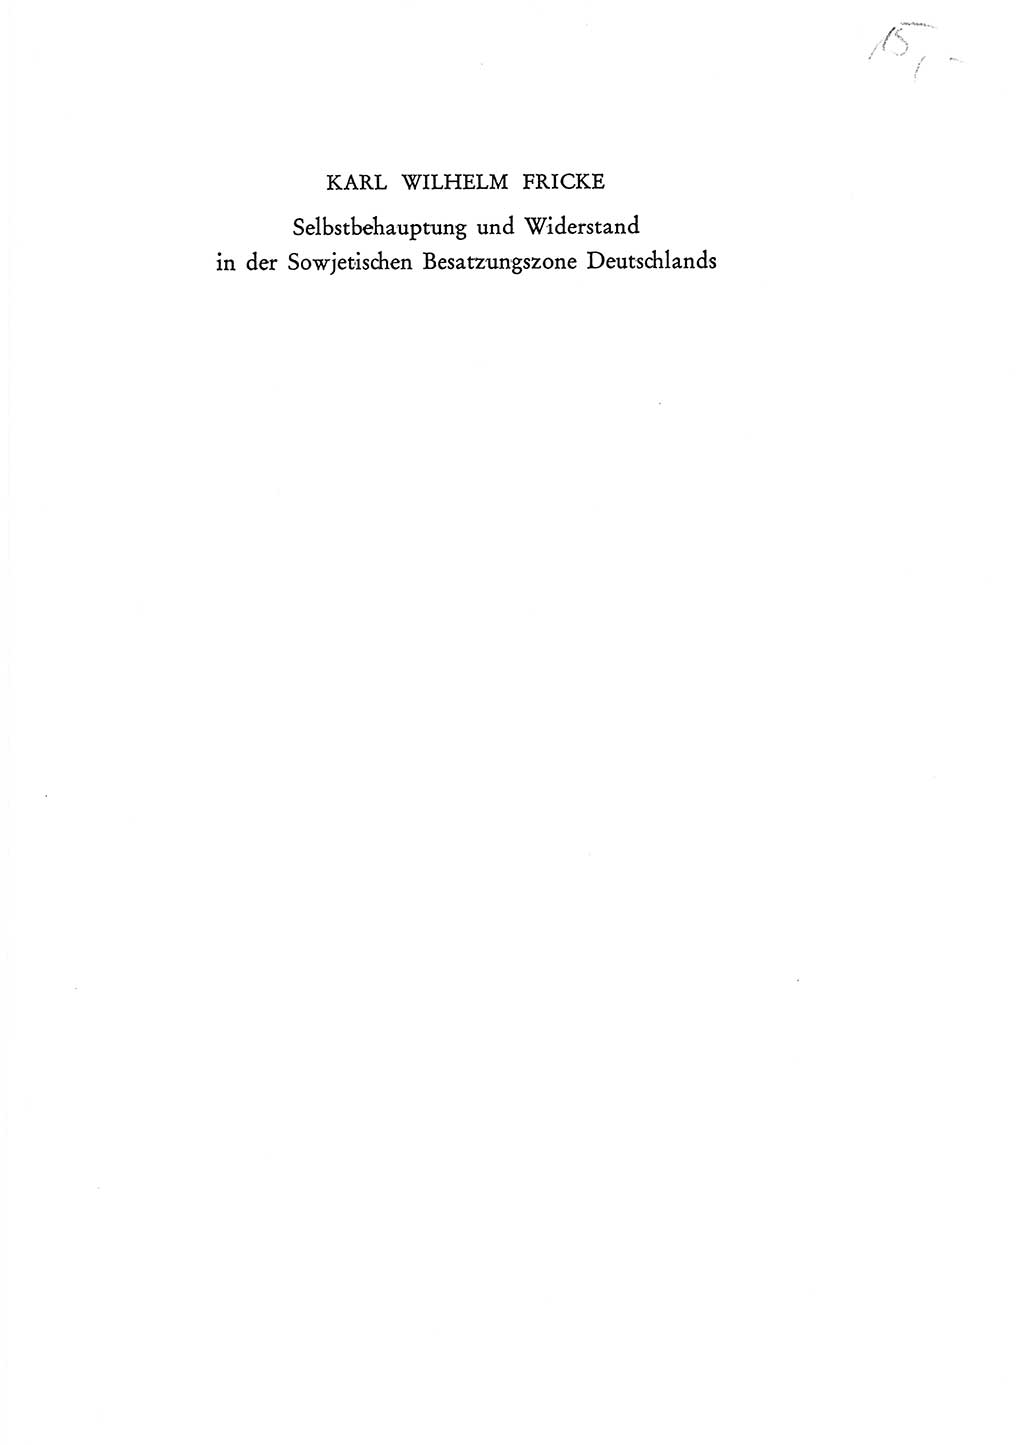 Selbstbehauptung und Widerstand in der Sowjetischen Besatzungszone (SBZ) Deutschlands [Deutsche Demokratische Republik (DDR)] 1964, Seite 1 (Selbstbeh. Wdst. SBZ Dtl. DDR 1964, S. 1)